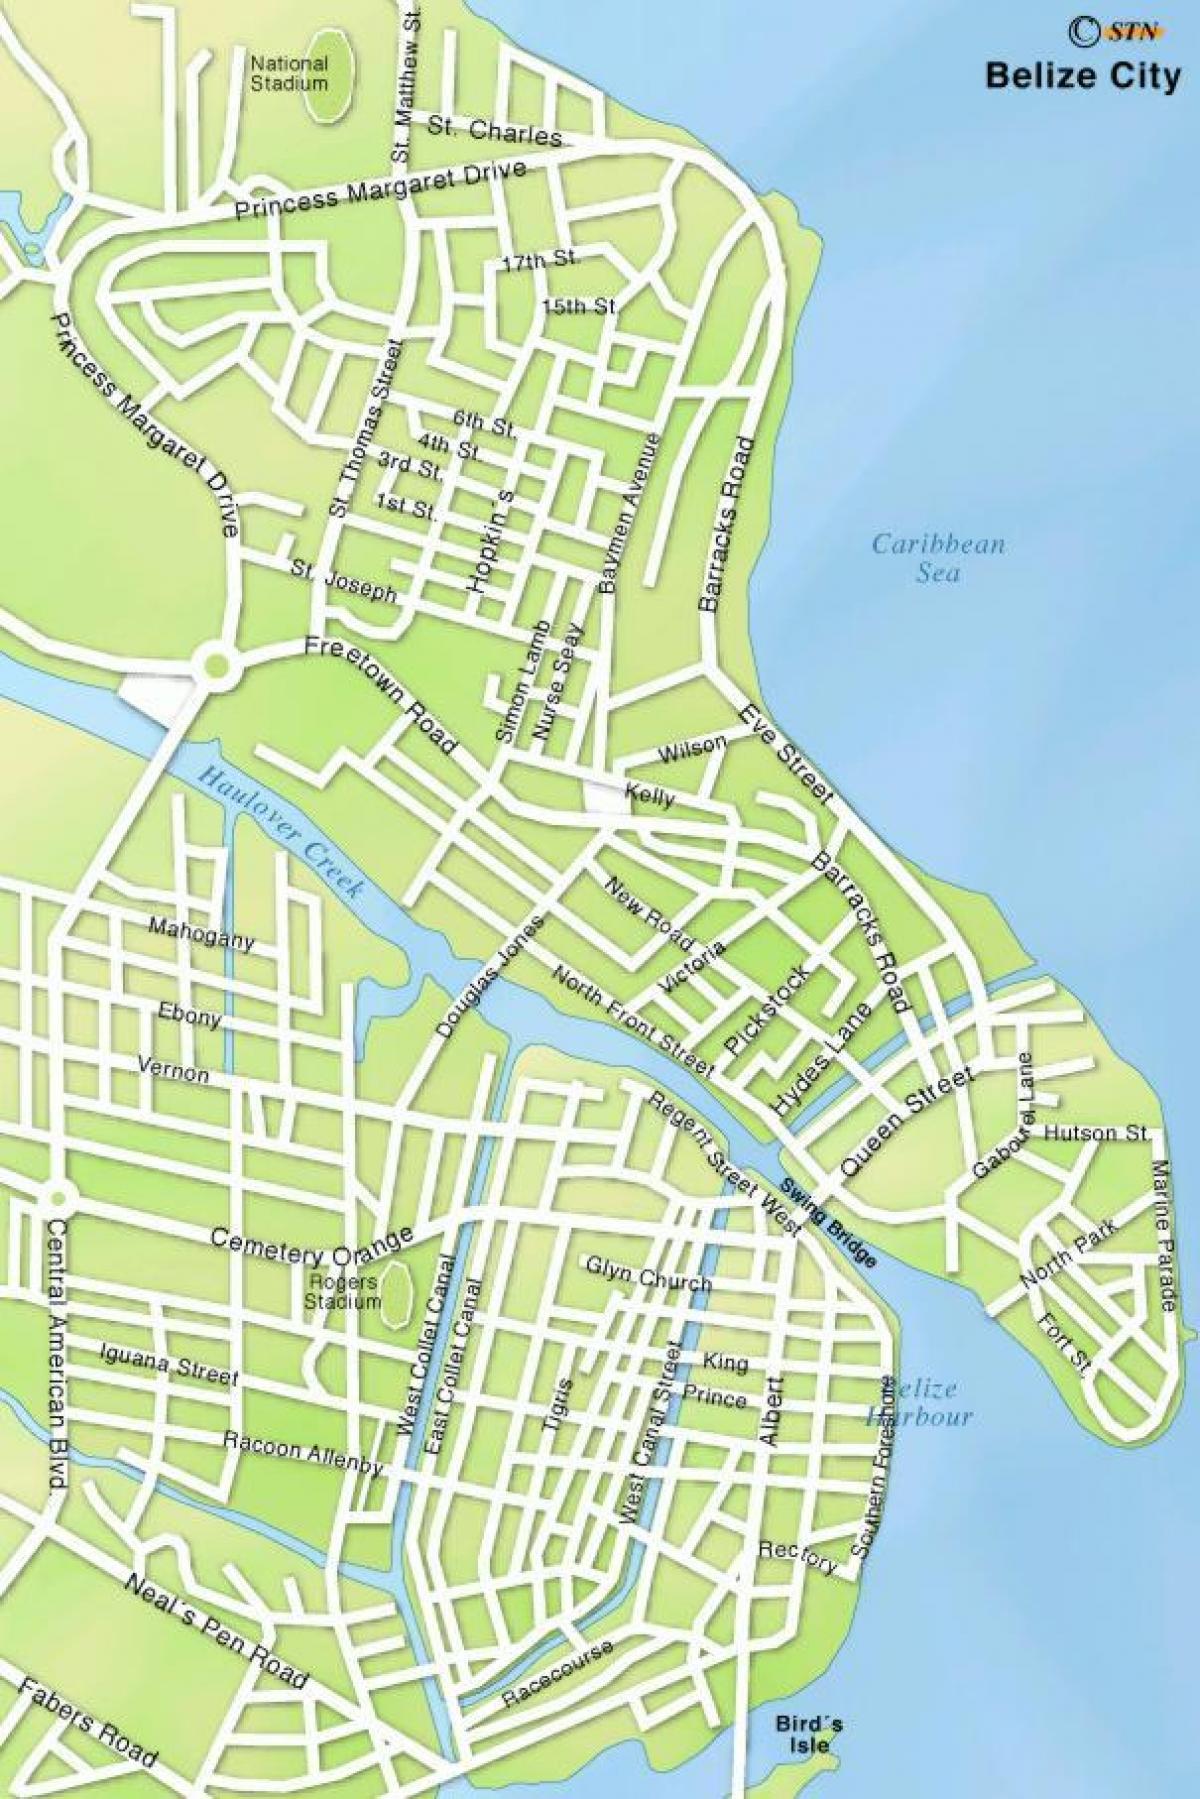 kort over Belize city gader